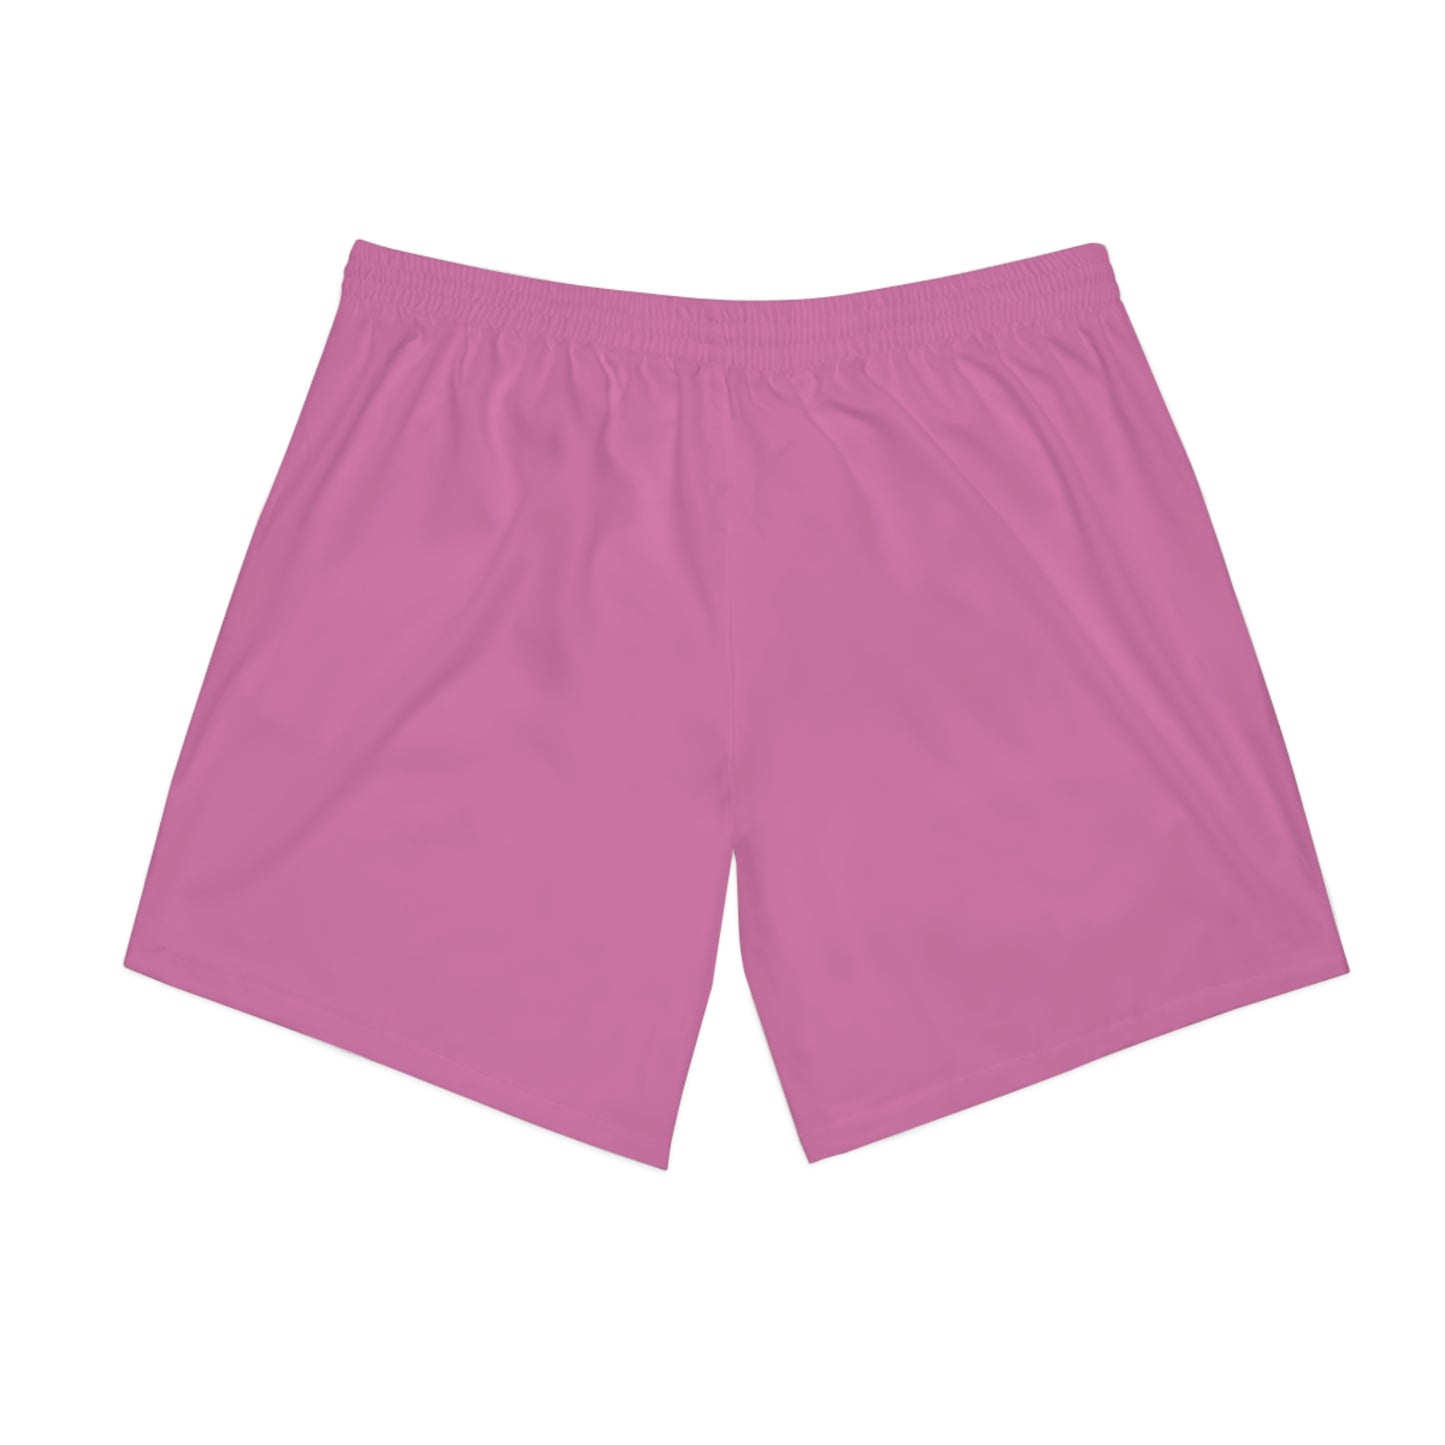 Pink Flawdawear Limited Edition OG Flawda Mane "My Piece Stand Out Like A Sailboat" Men's Elastic Beach Playuz Shorts